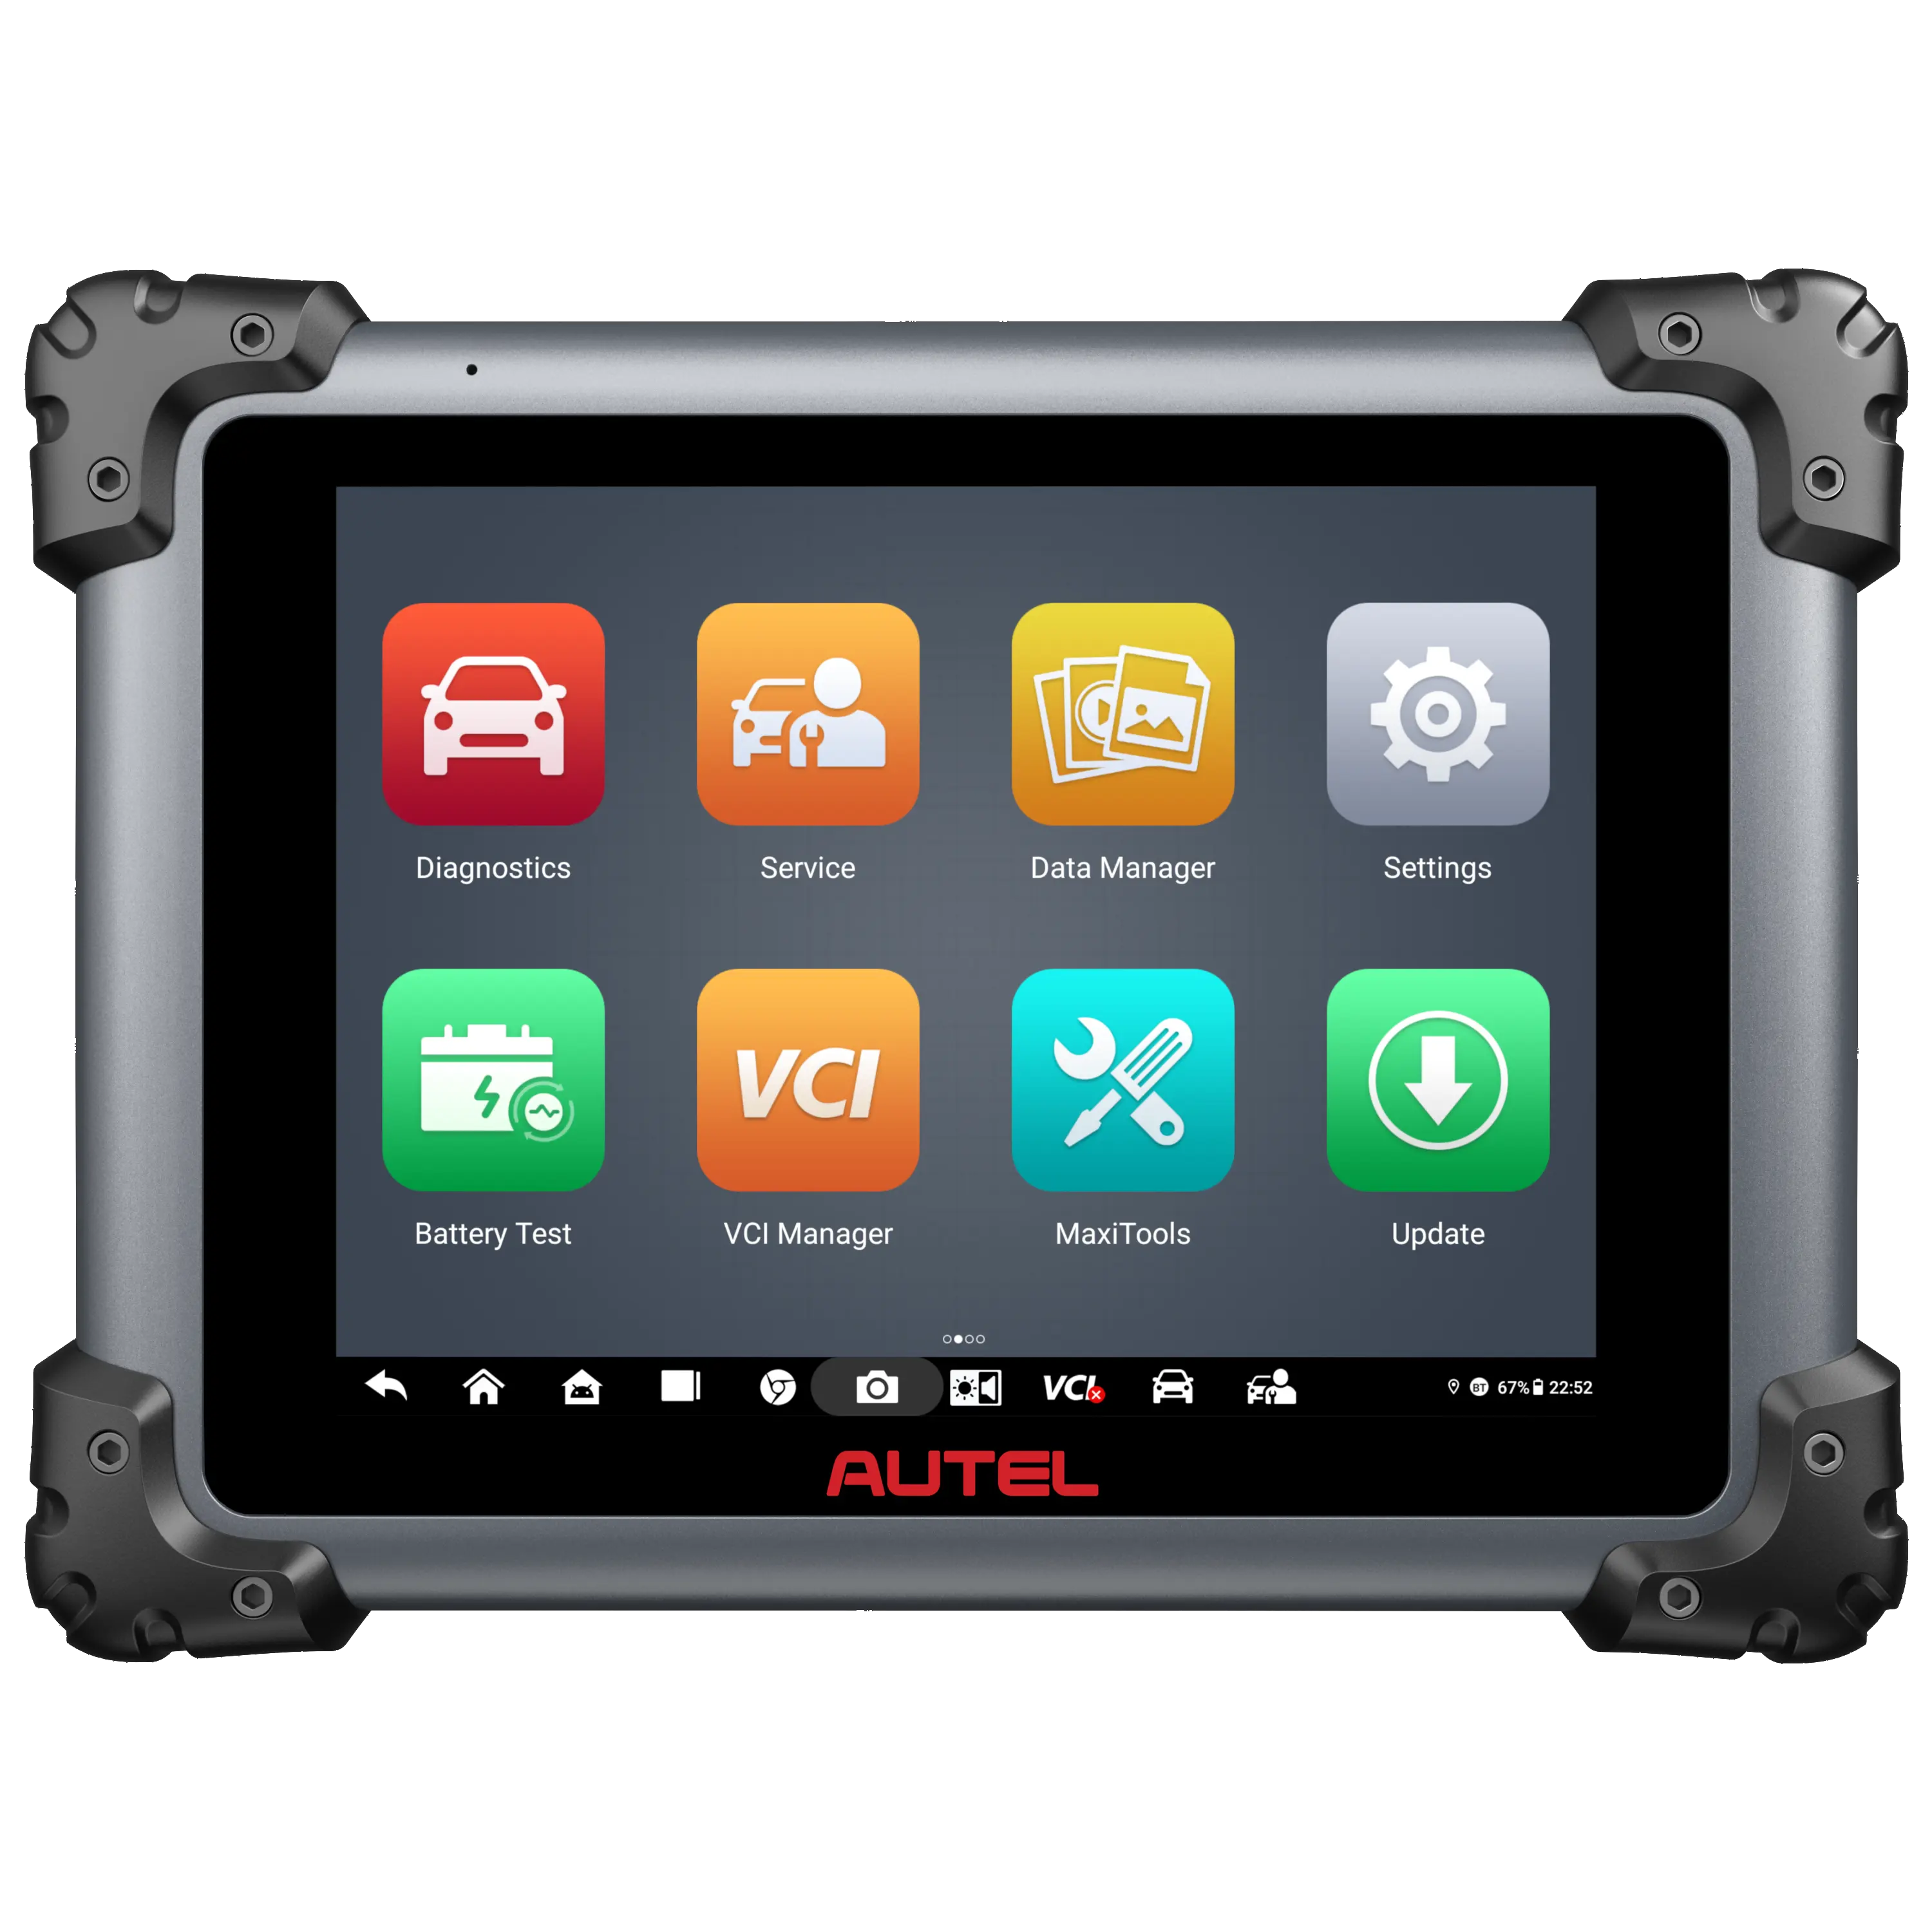 2024 Autel MaxiSys Elite II Pro Elite2 eliteii comme Ultra MS908S J2534 outil de reprogrammation CAN FD & Do IP scanner de Diagnostic intelligent